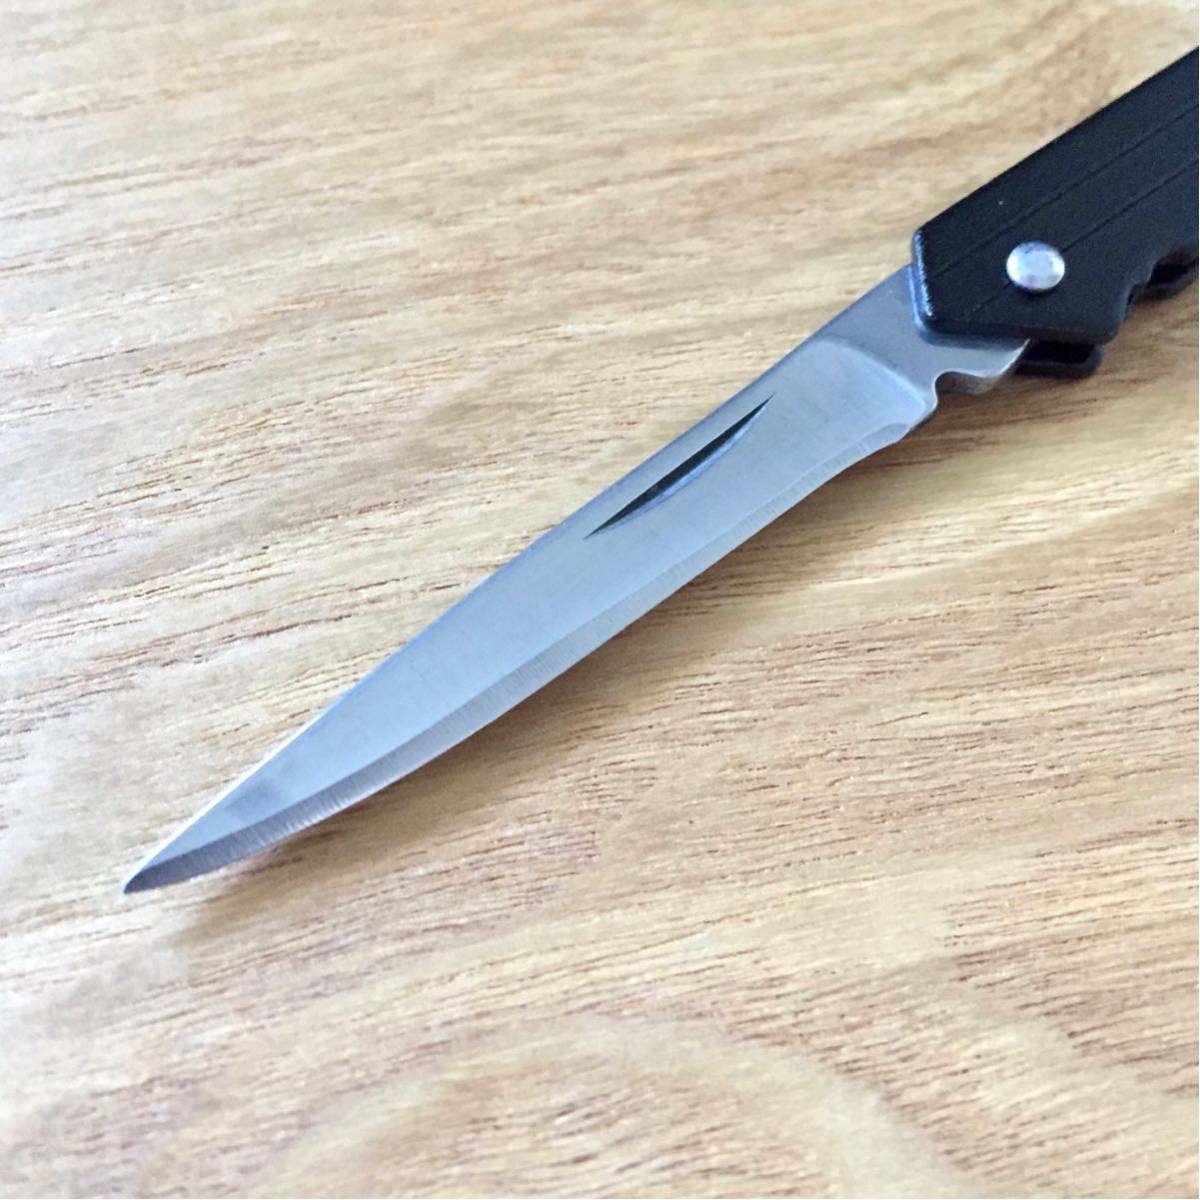  новый товар BEAMS Key type Folding knife Beams ключ type складной нож S знак kalabina есть мобильный размер EDC OUTDOOR CAMP FISHING Every tei Carry 